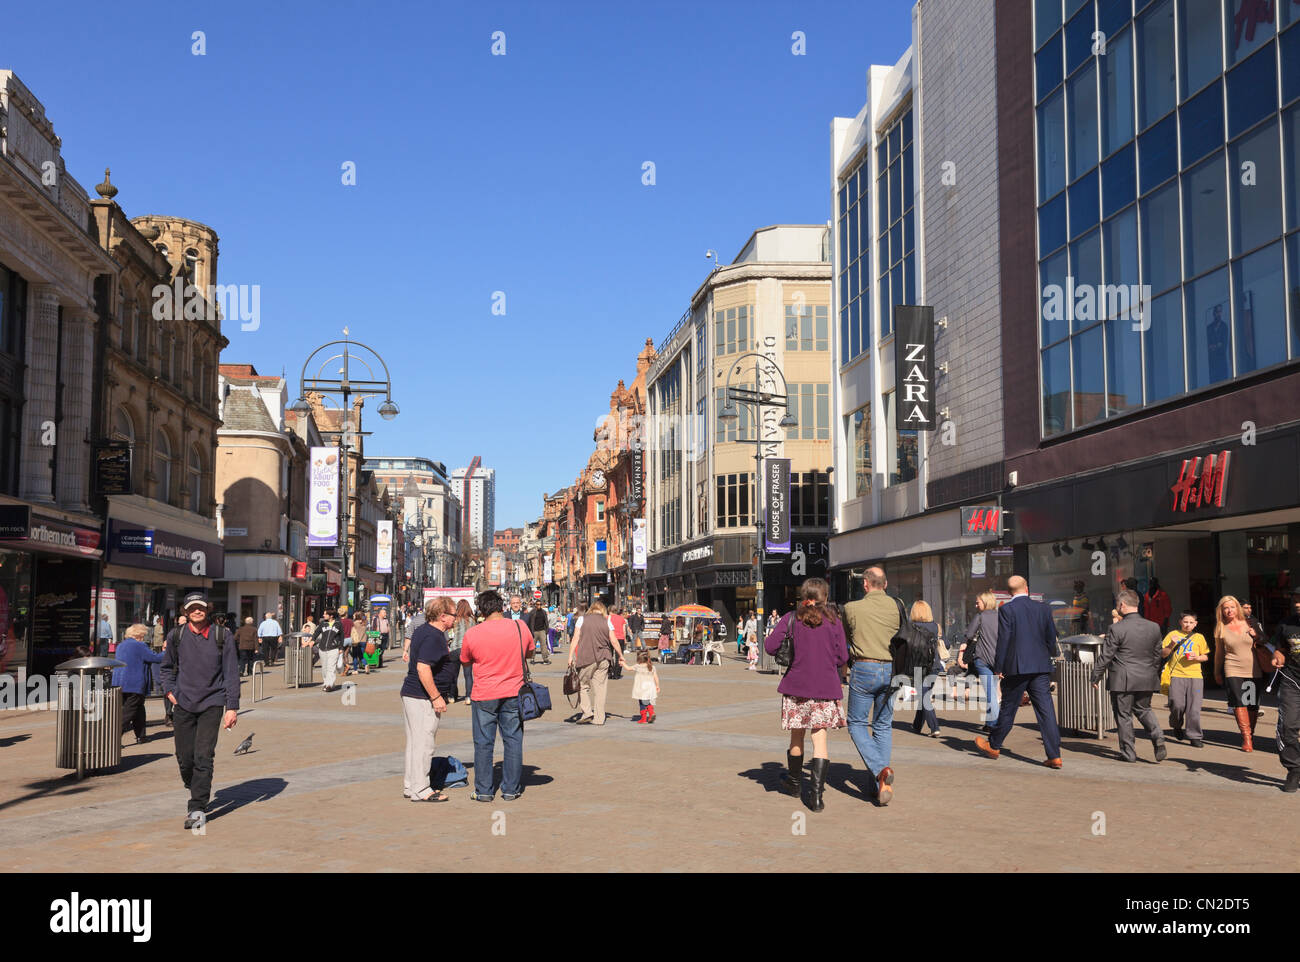 Concurrida calle principal escena con gente de compras en el centro de la ciudad, zona peatonal. Briggate, Leeds, West Yorkshire, Inglaterra, Reino Unido, Gran Bretaña Foto de stock